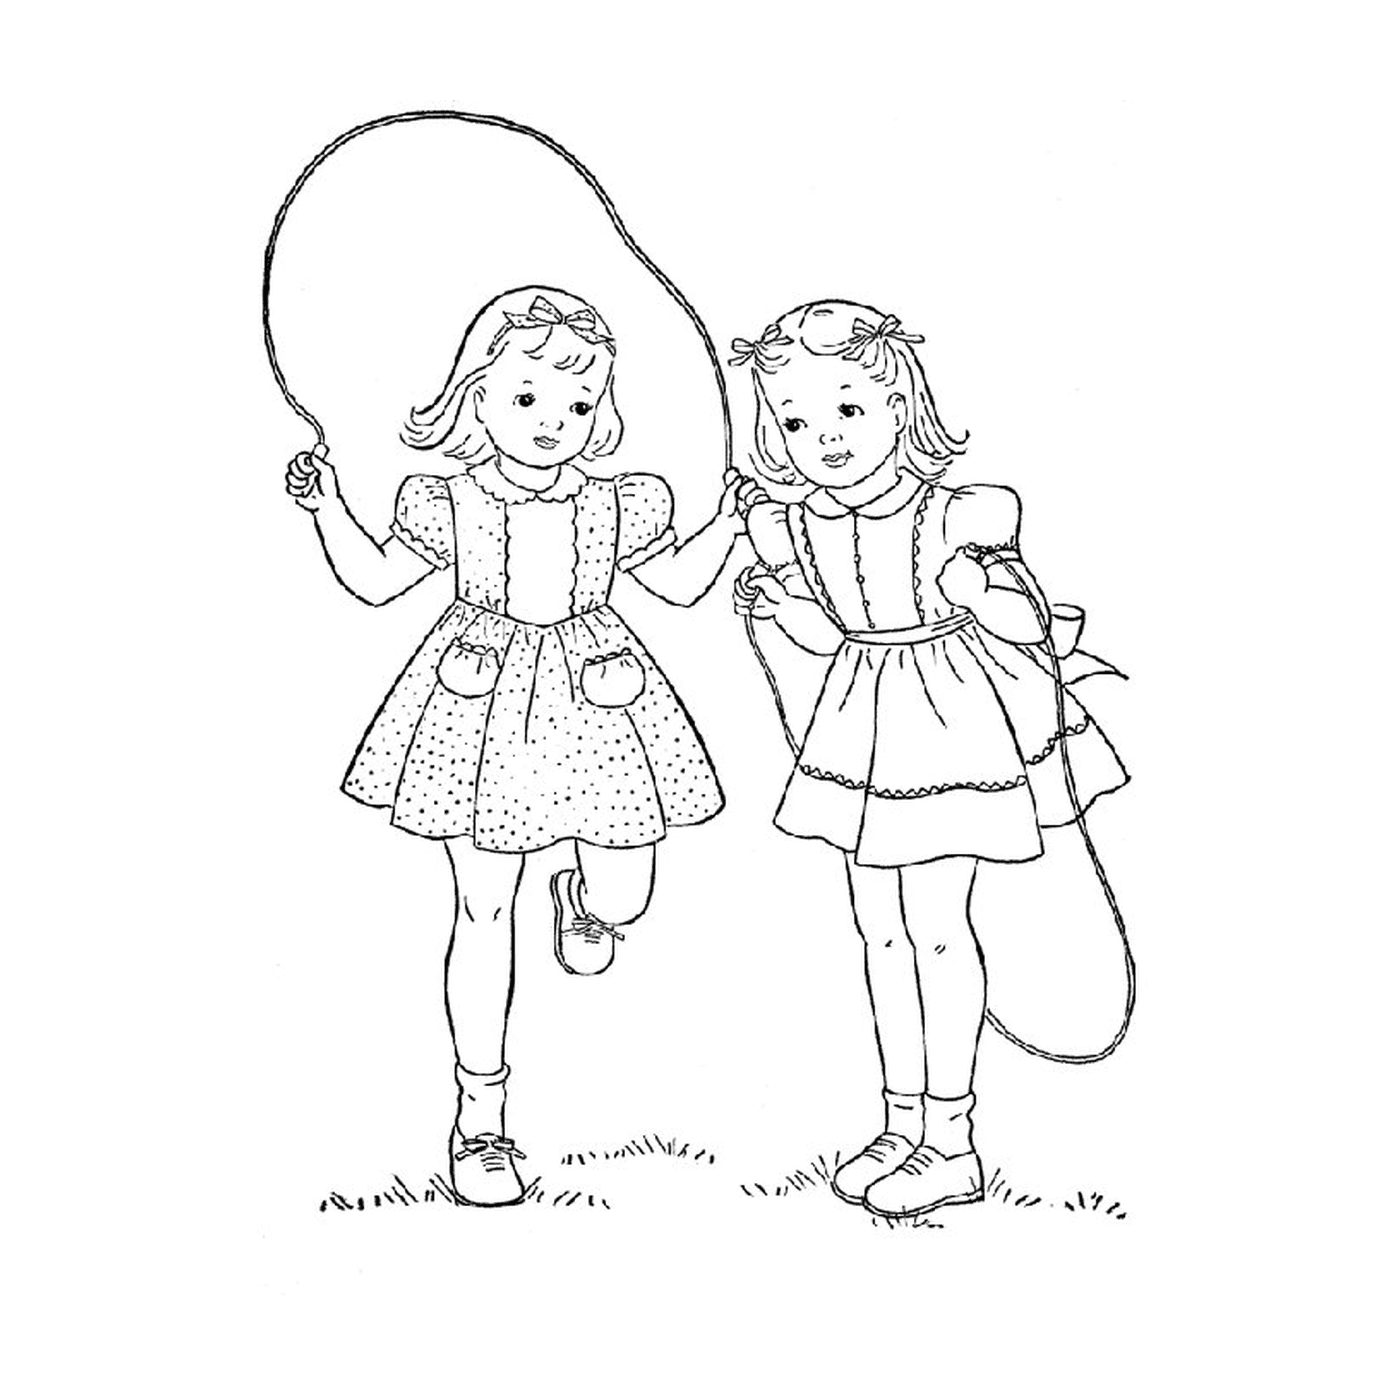  Zwei kleine Mädchen spielen mit einem Sprungseil 